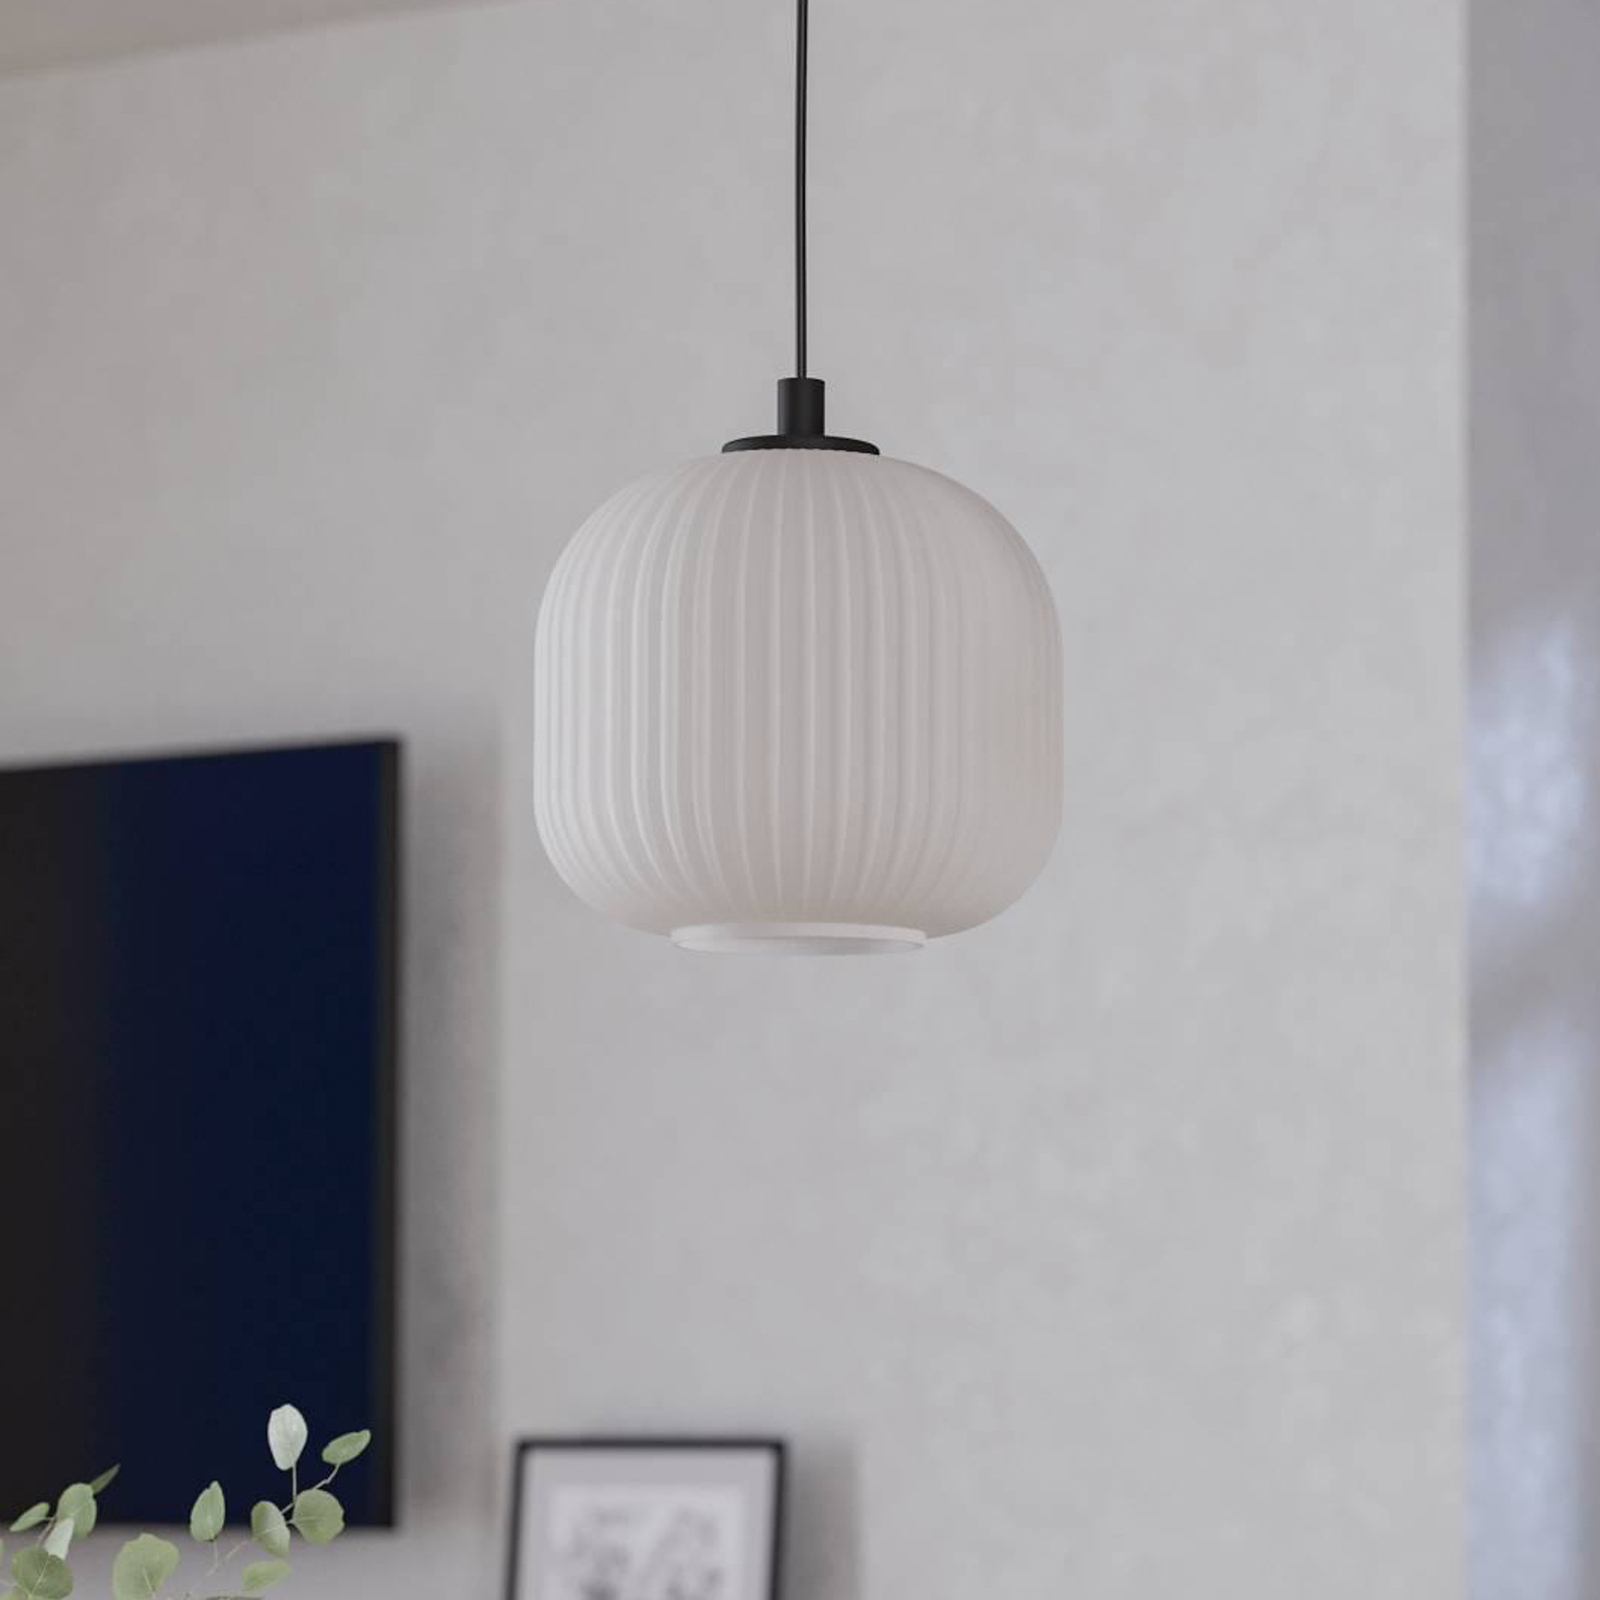 Hanglamp Mantunalle, Ø 20 cm, zwart/wit, glas